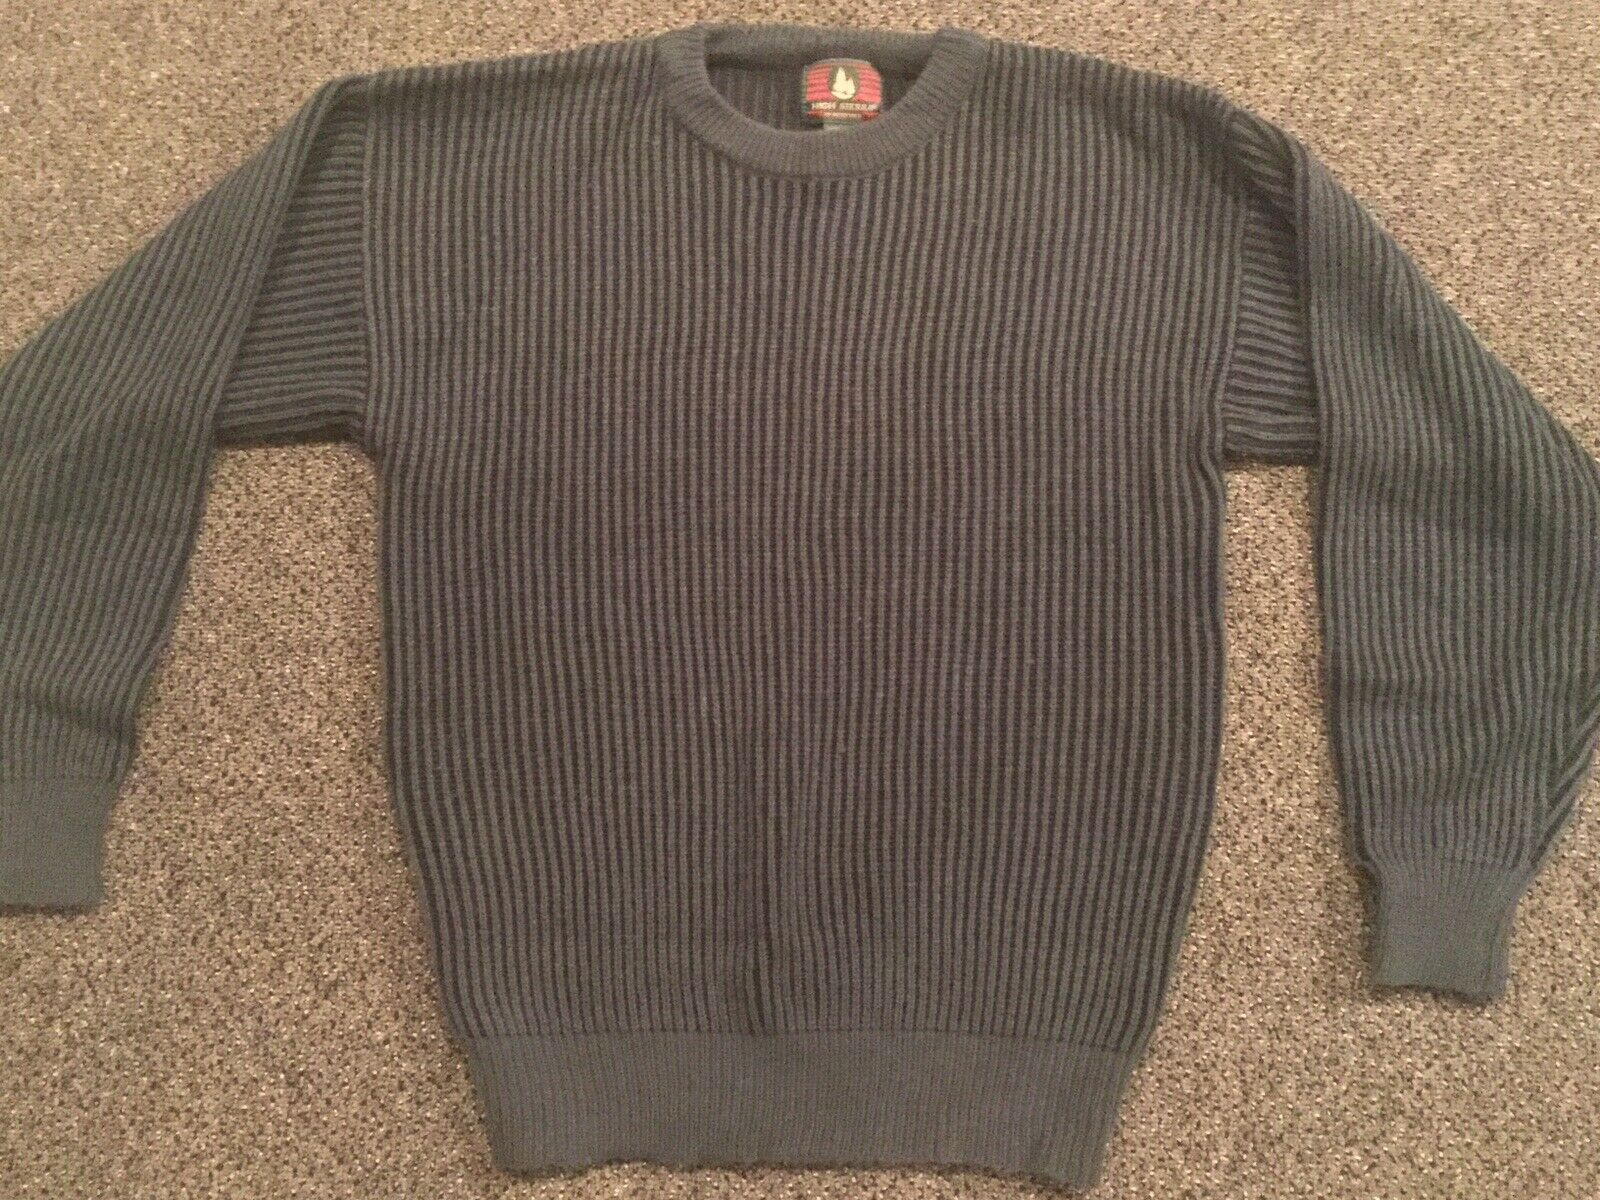 High Sierra Men’s Knit Sweater, Size M - $19.95